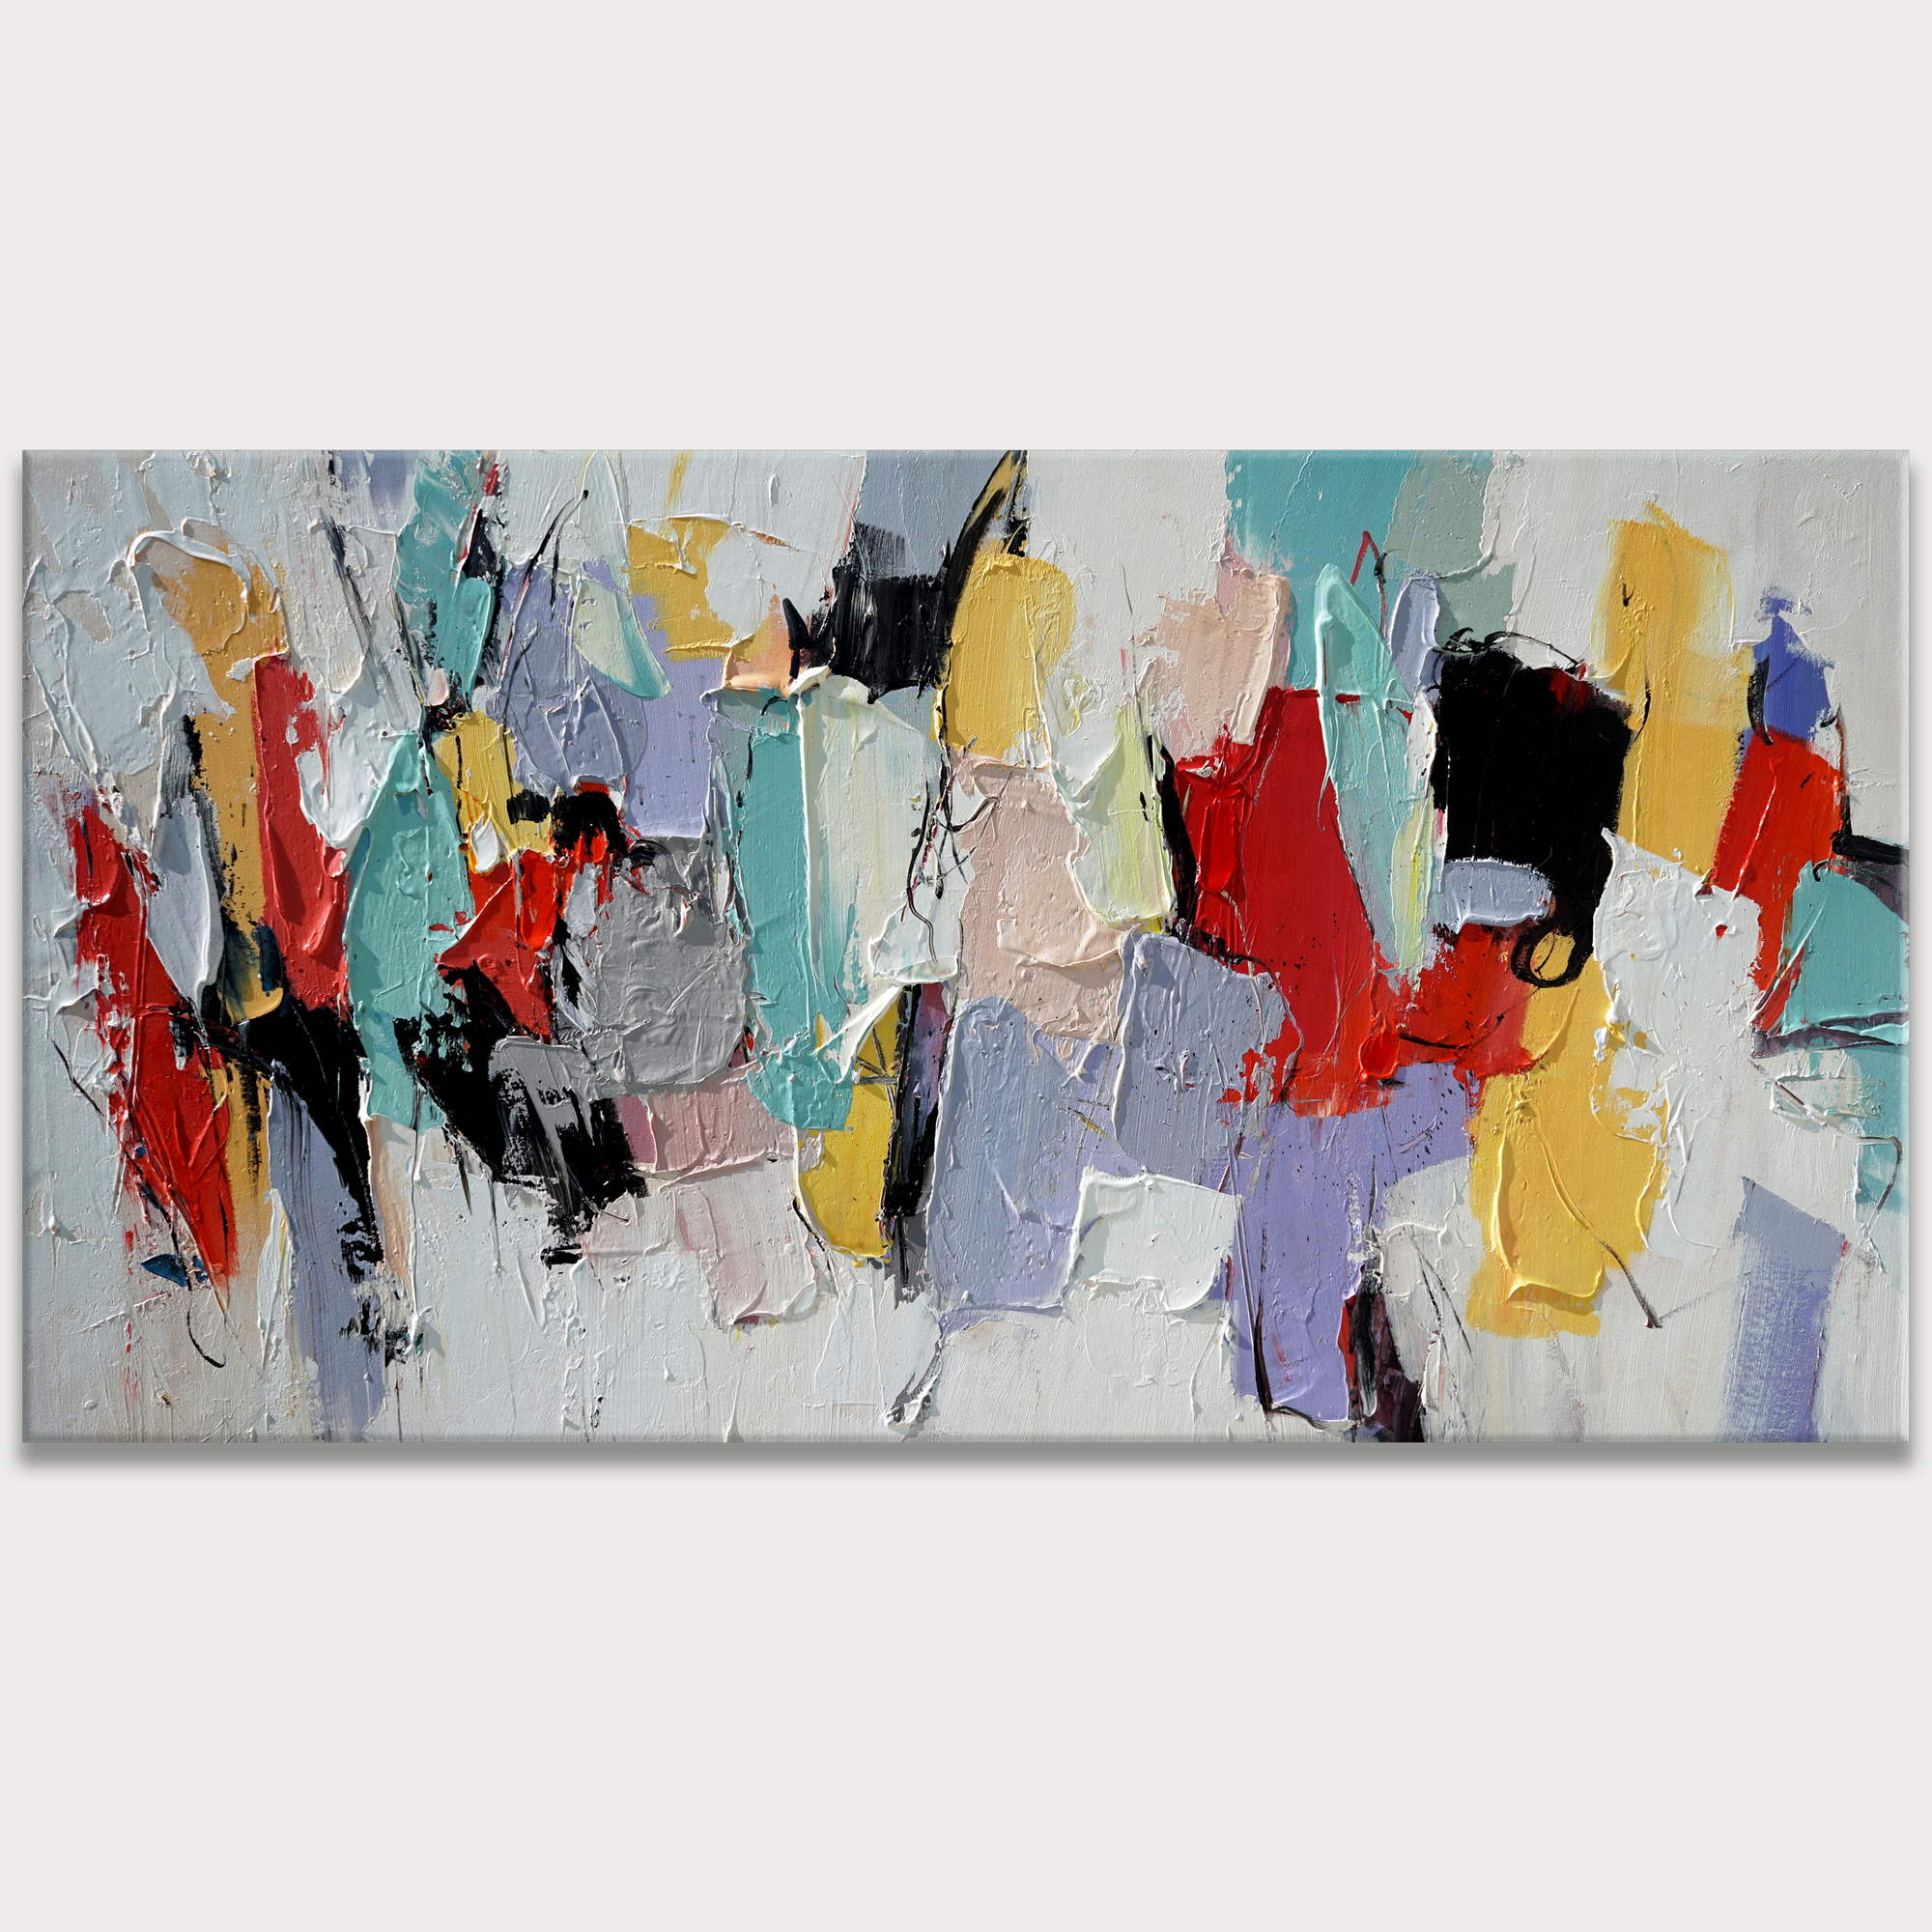 Jeu de couleurs abstrait peint à la main 90x180cm